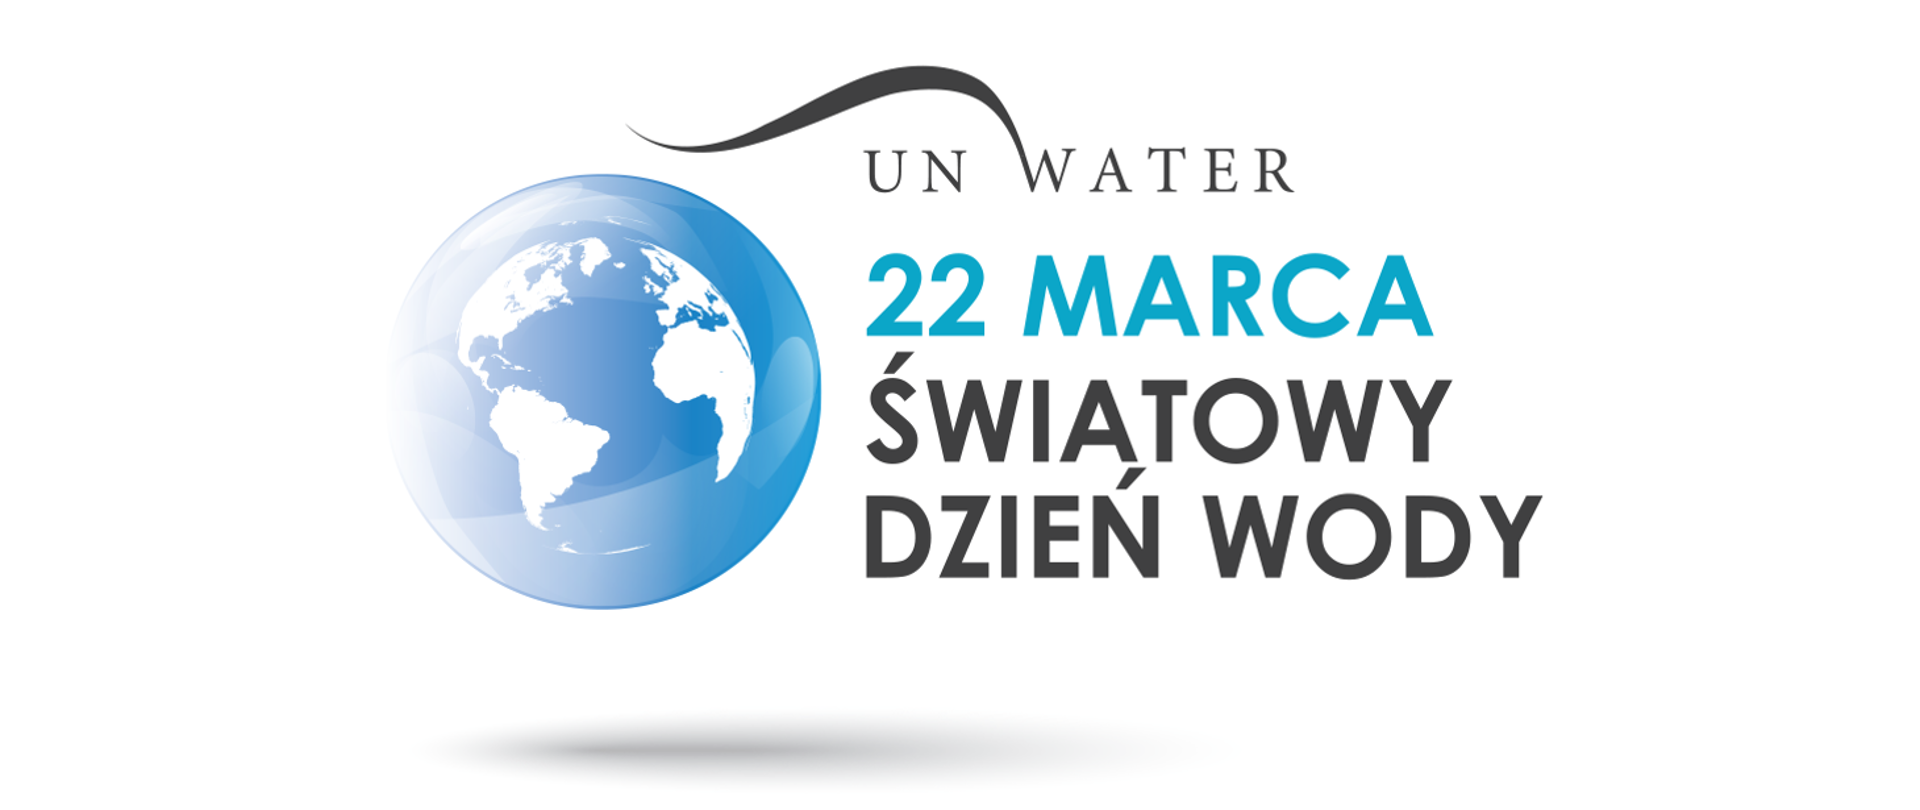 kula ziemska z napisem po prawej stronie 22 marca światowy dzień wody 